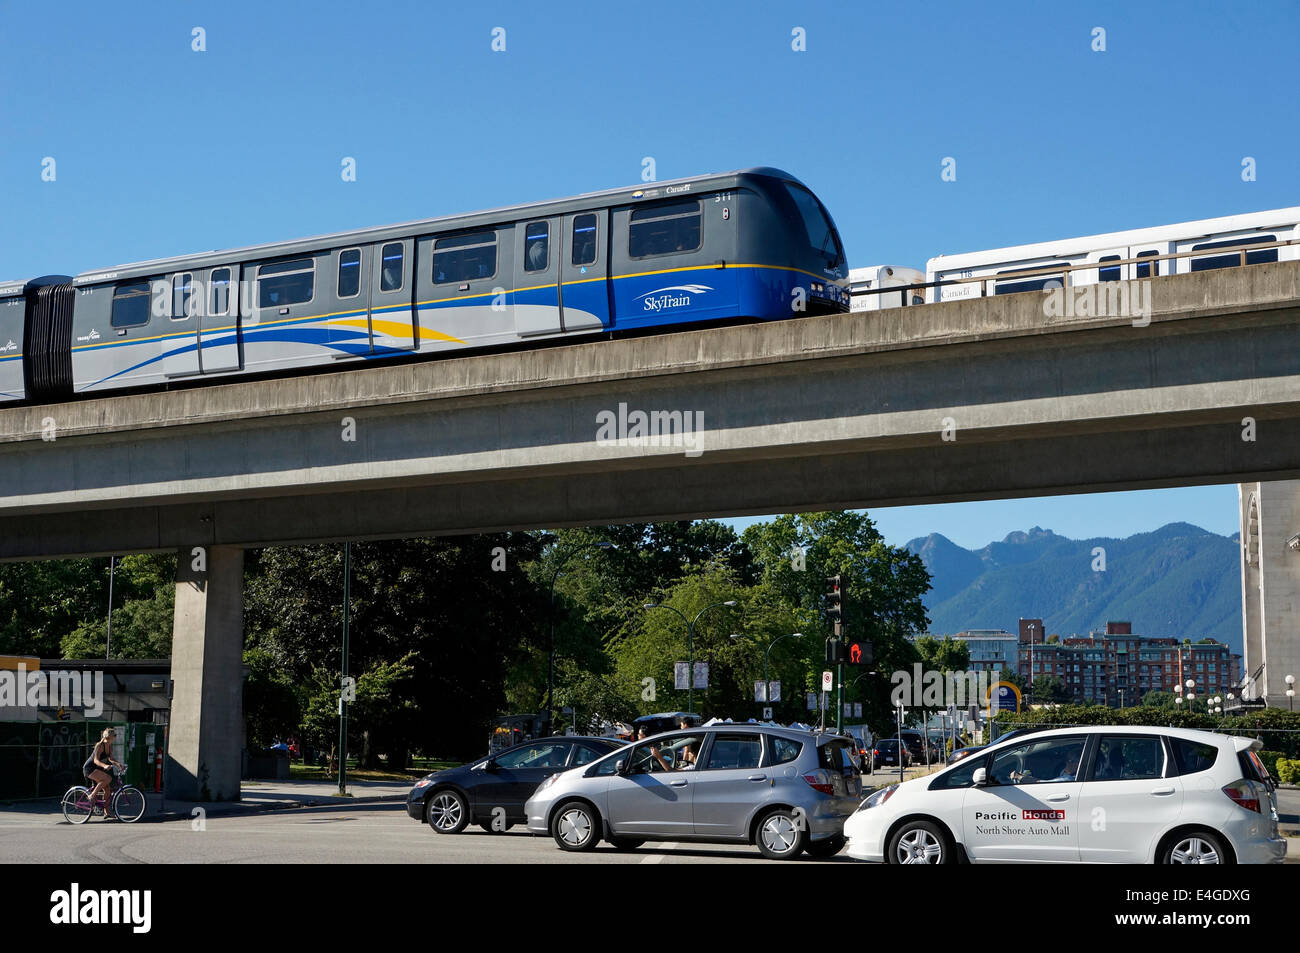 Der Skytrain erhöhte helle schnelle Durchfahrt System überqueren einer viel befahrenen Straße mit Autos und ein Fahrrad, Vancouver, BC, Kanada Stockfoto